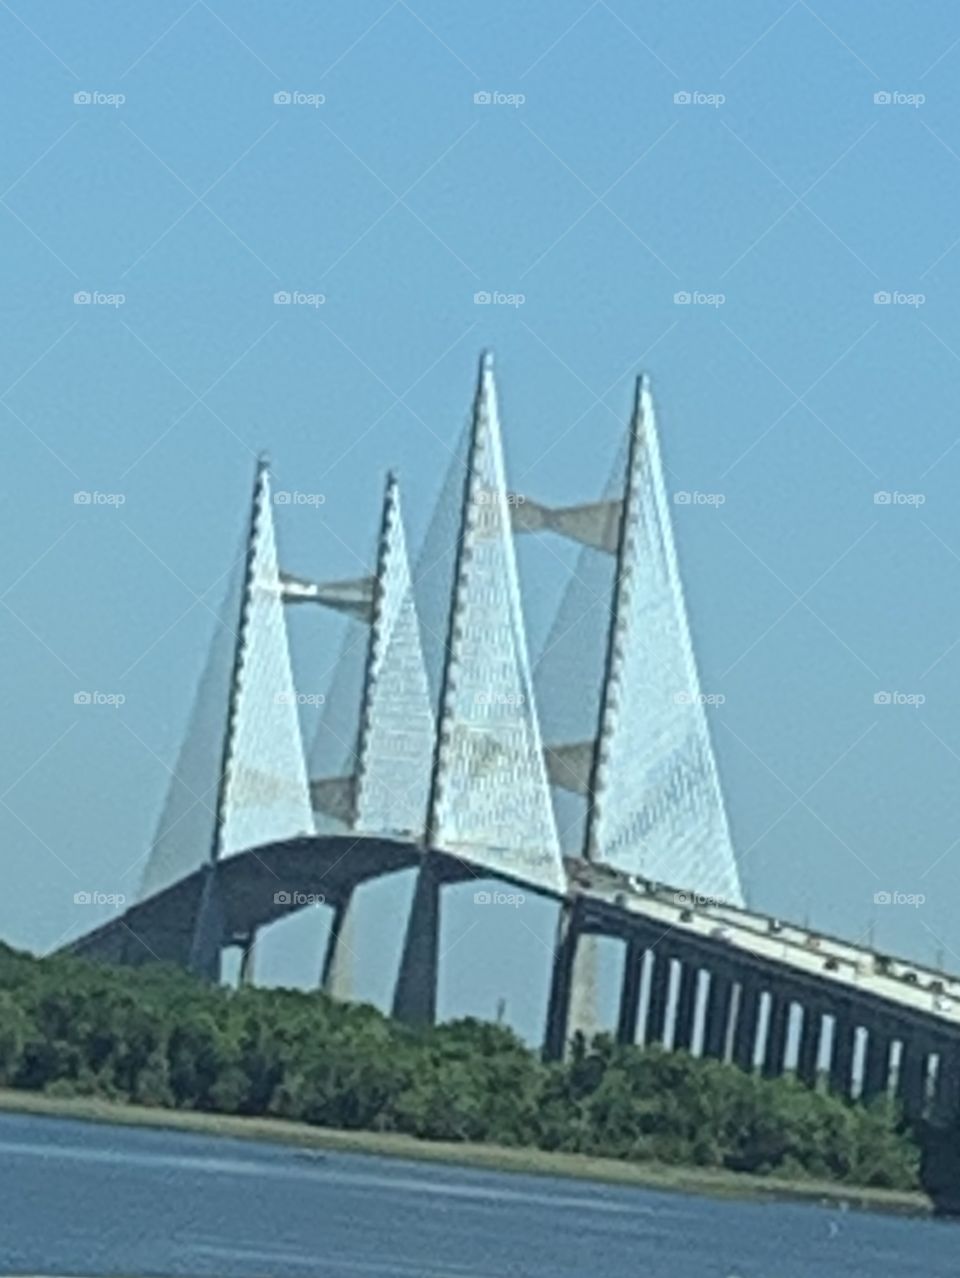 Amazing bridge architecture